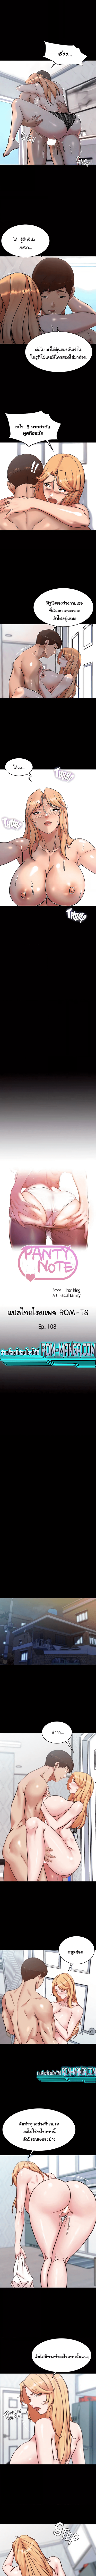 Panty Note 108 (1)